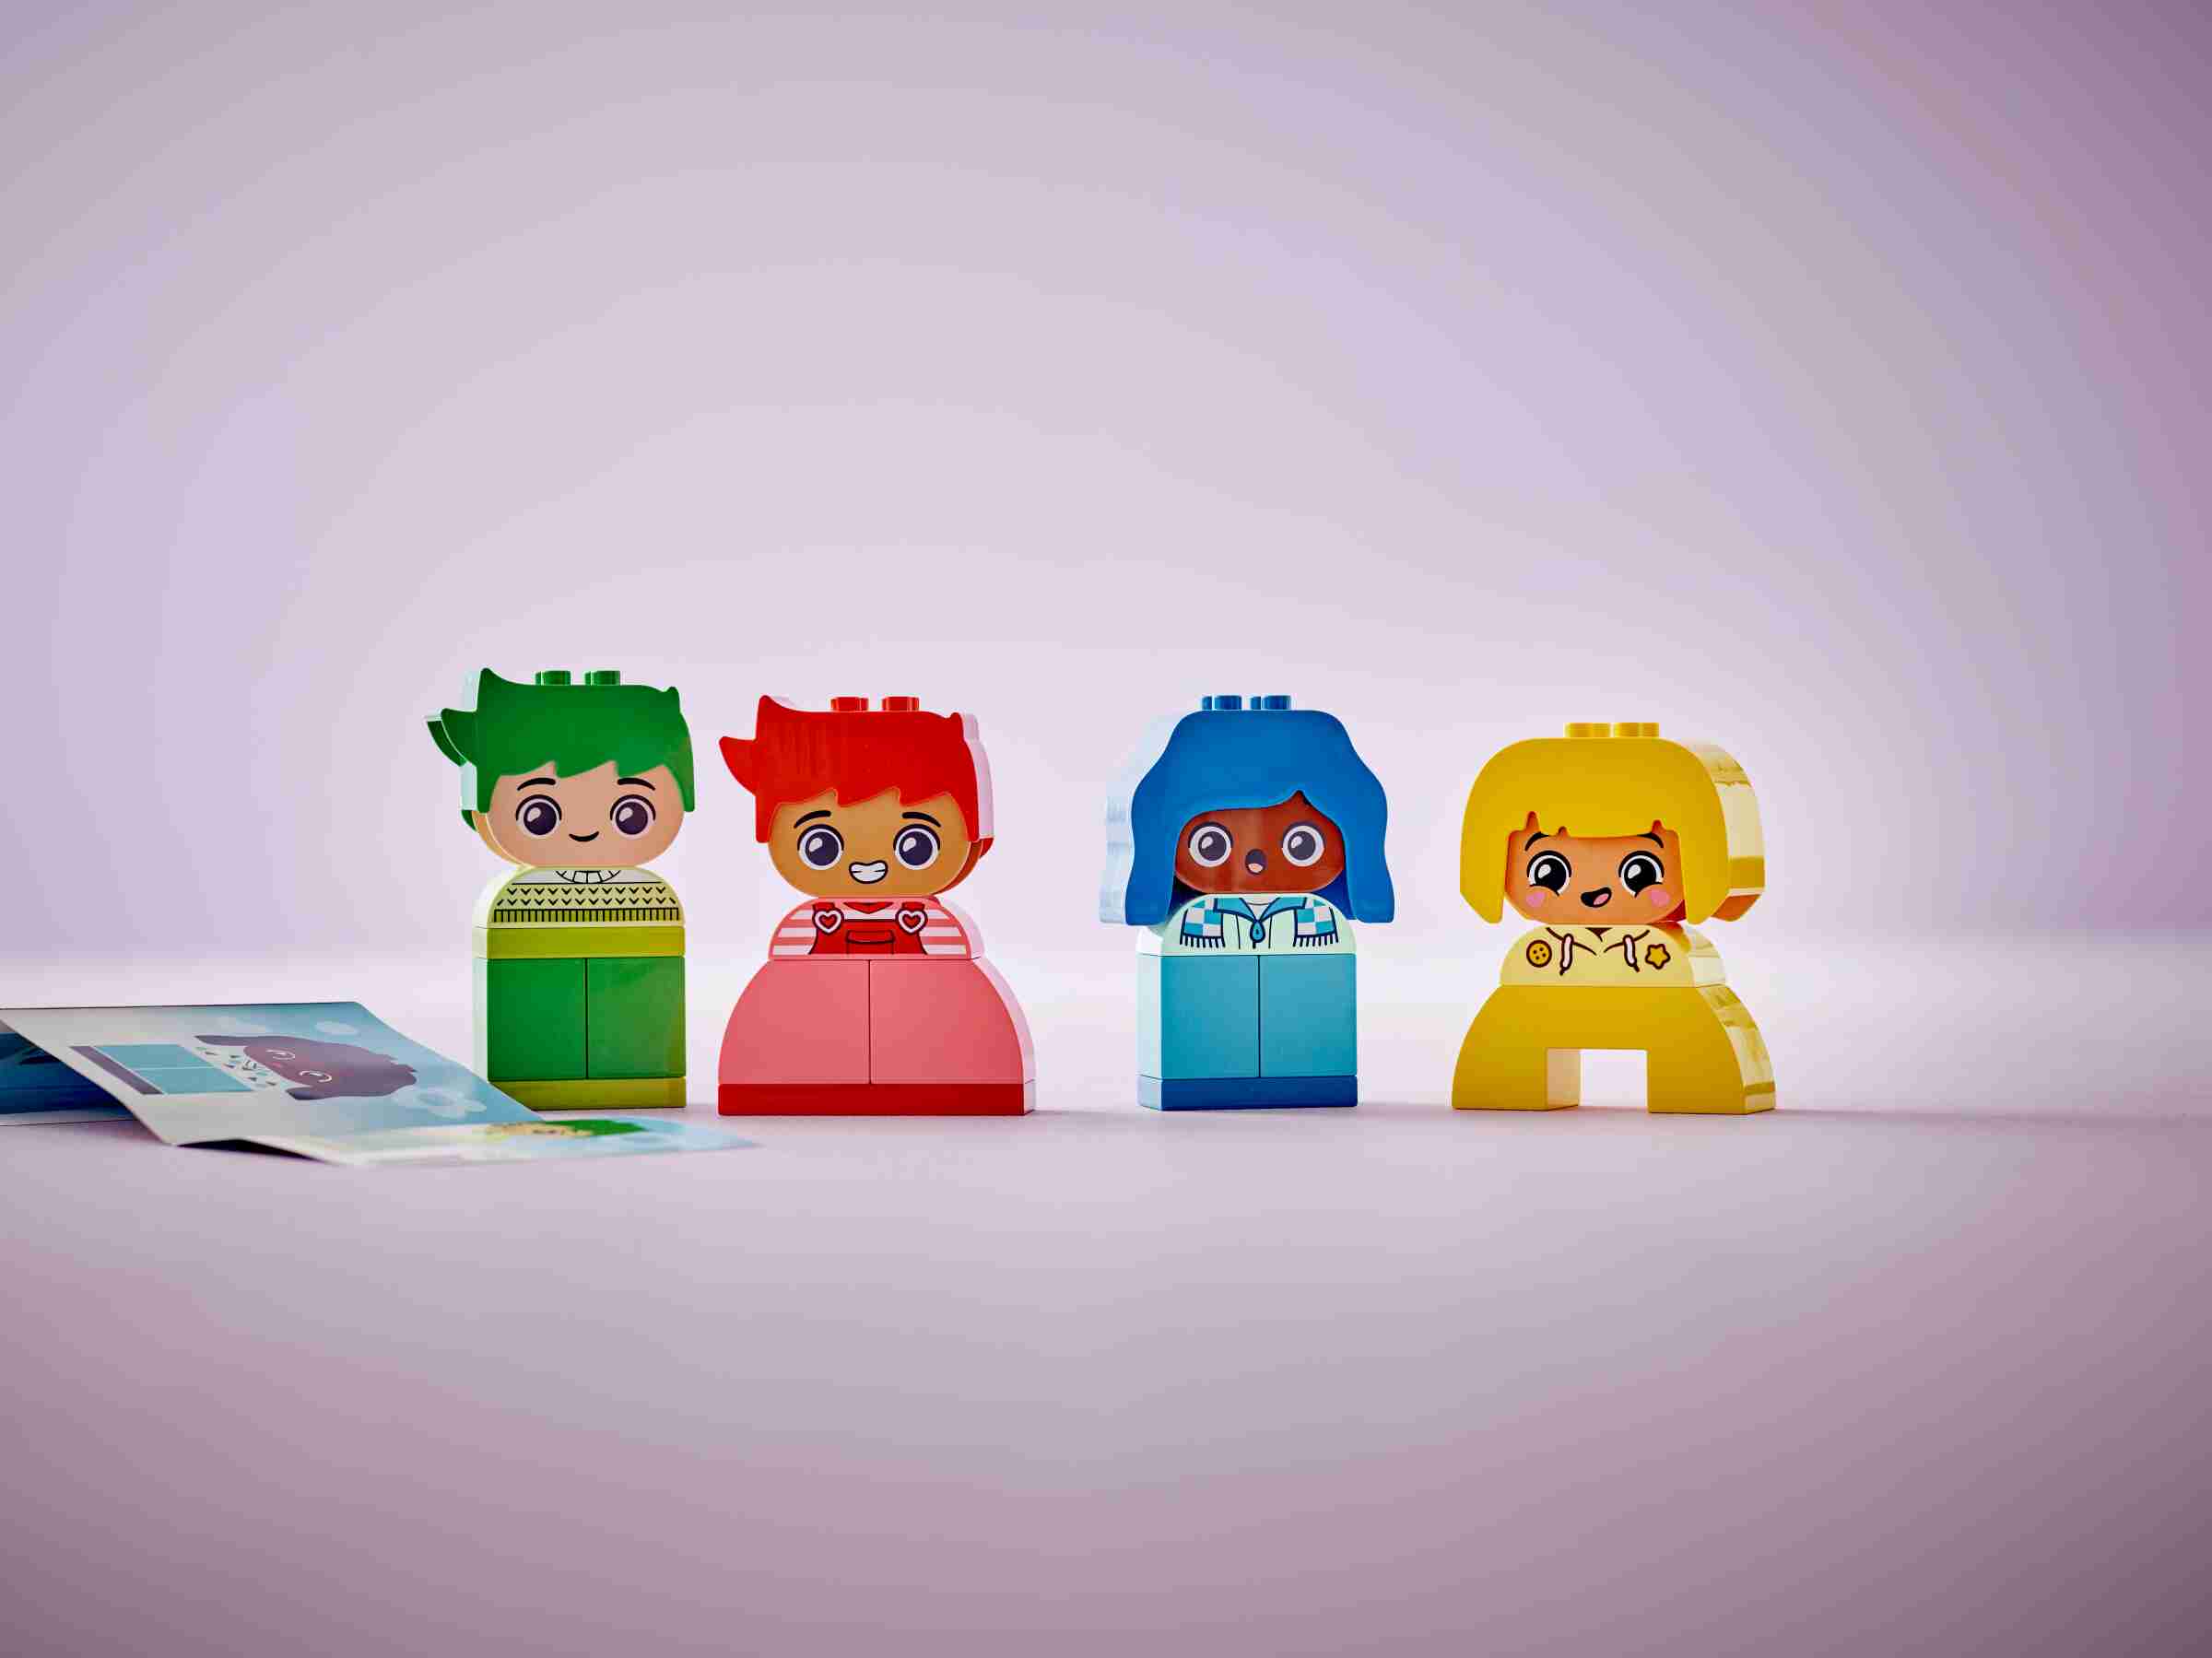 LEGO 10415 DUPLO Große Gefühle, 4 Figuren mit jeweils 2 Gesichtern